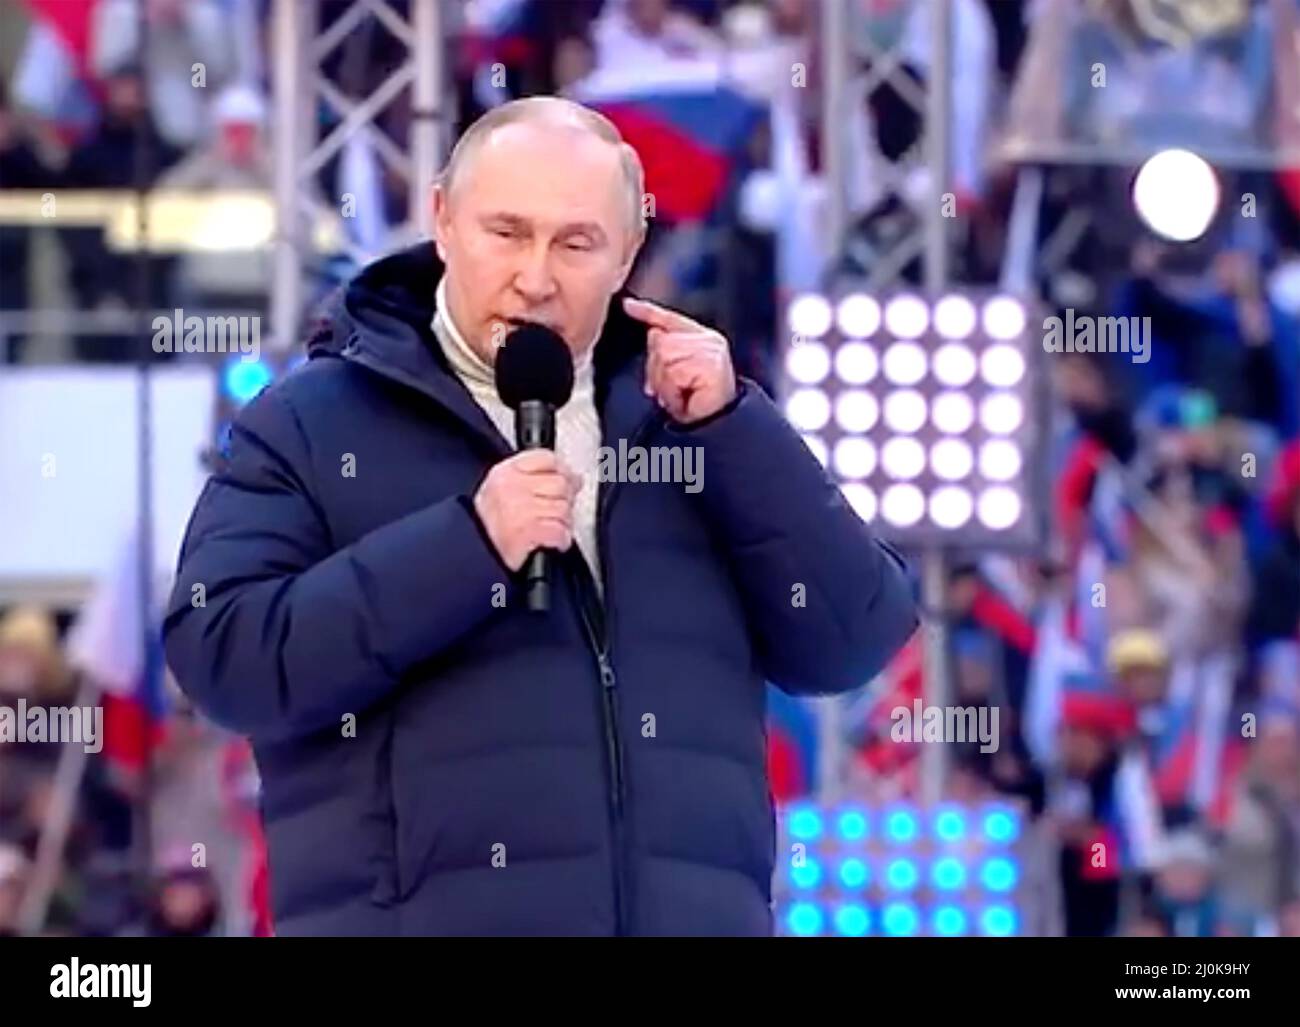 WLADIMIR PUTIN spricht eine Kundgebung in Moskau on18 März 20223 zum achten Jahrestag der Annexion der Krim zu feiern. Am Freitag, 18. März. Er trägt einen weißen Rollkragenpullover der italienischen Firma Kiton und eine Puffa-Jacke von Loro Piana.Foto: kremlin.ru Stockfoto